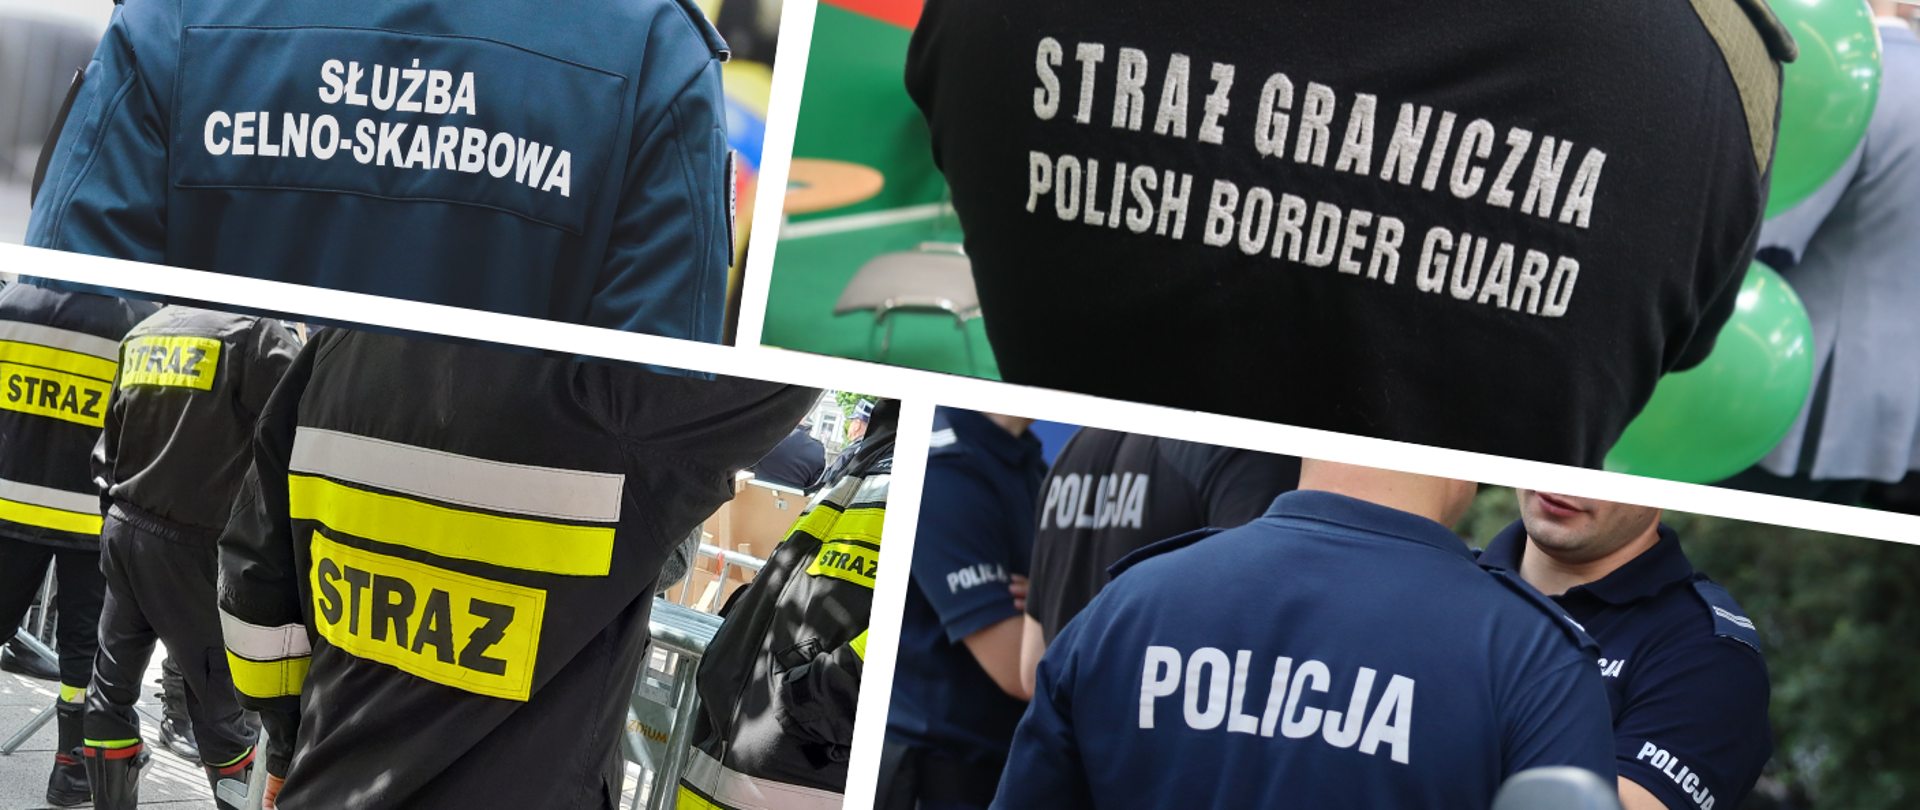 Kolaż zdjęć z funkcjonariuszami służby celno-skarbowej, straży granicznej, straży pożarnej oraz policji